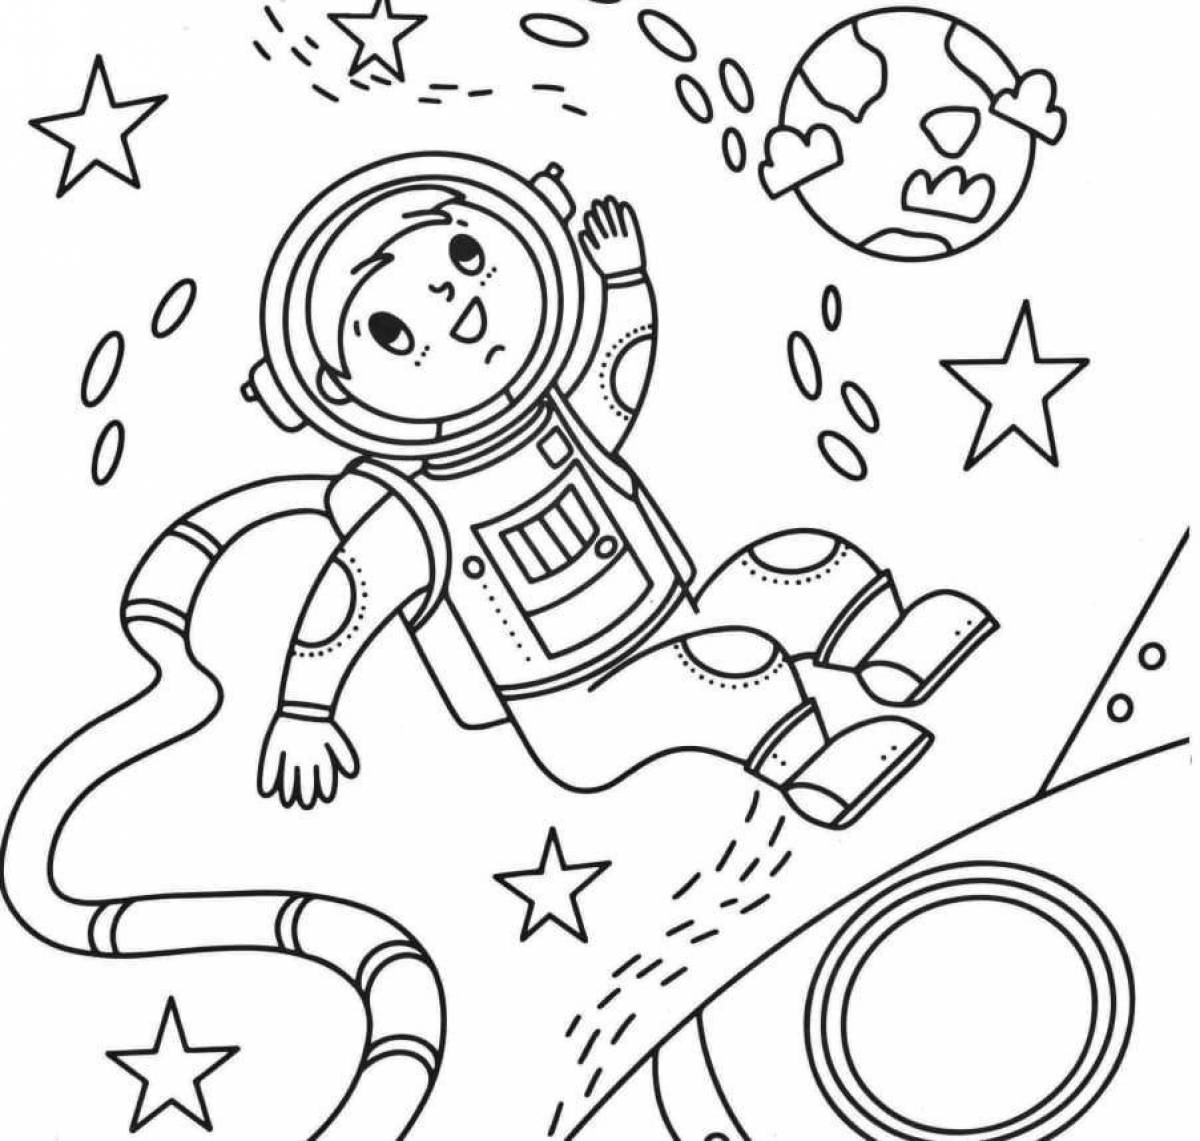 Великолепная космическая раскраска для детей 6-7 лет